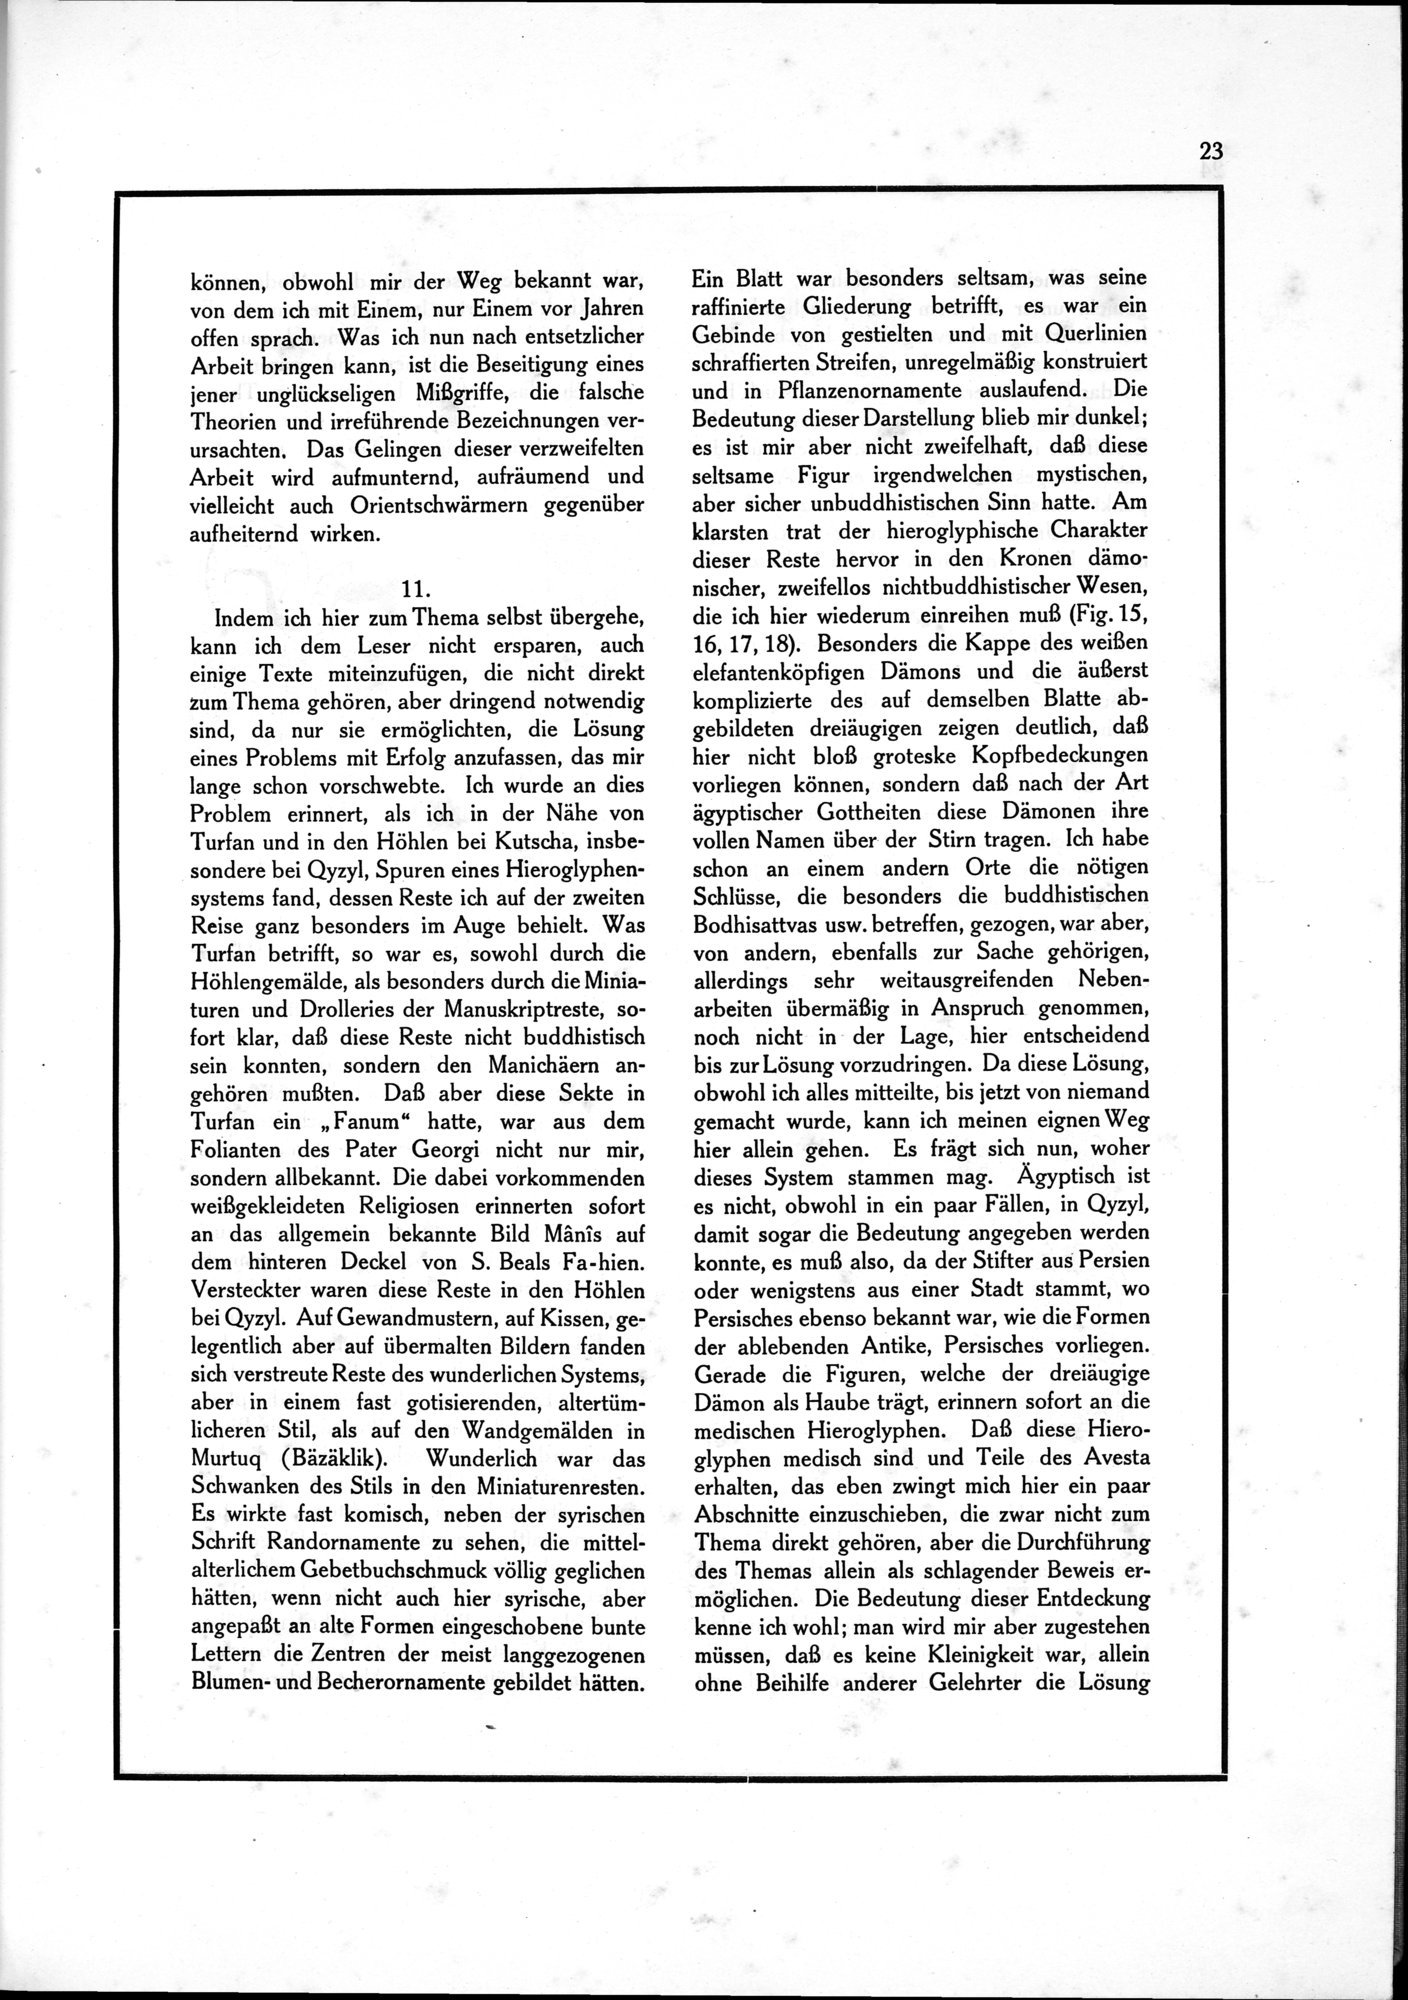 Die Teufel des Avesta und Ihre Beziehungen zur Ikonographie des Buddhismus Zentral-Asiens : vol.1 / Page 27 (Grayscale High Resolution Image)